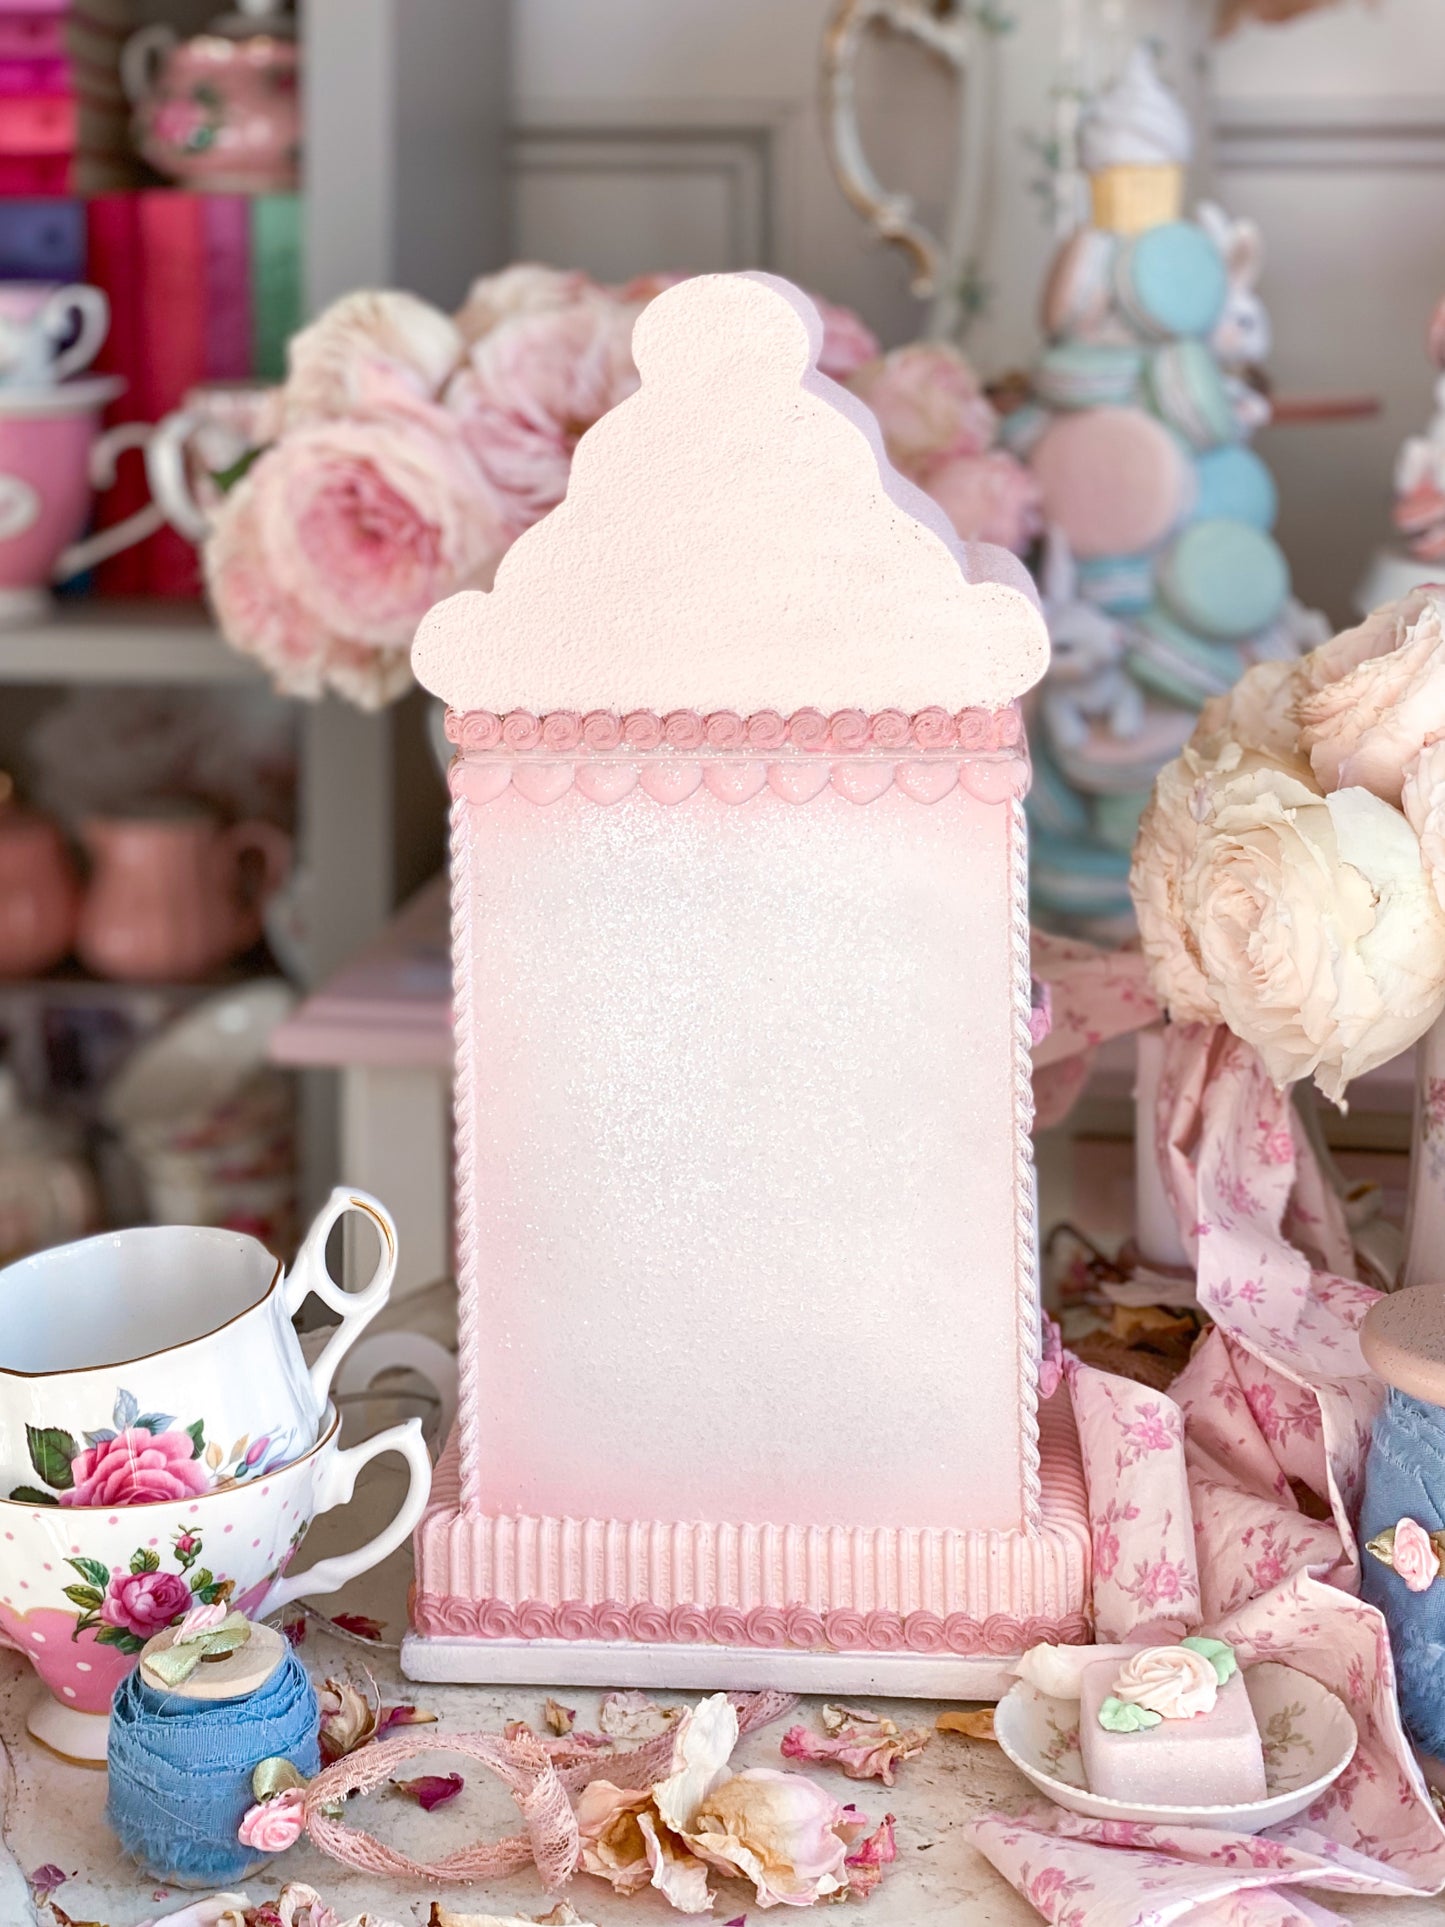 Bespoke Pastel Pink Spring or Valentine’s Day Floral LED light up Gingerbread House